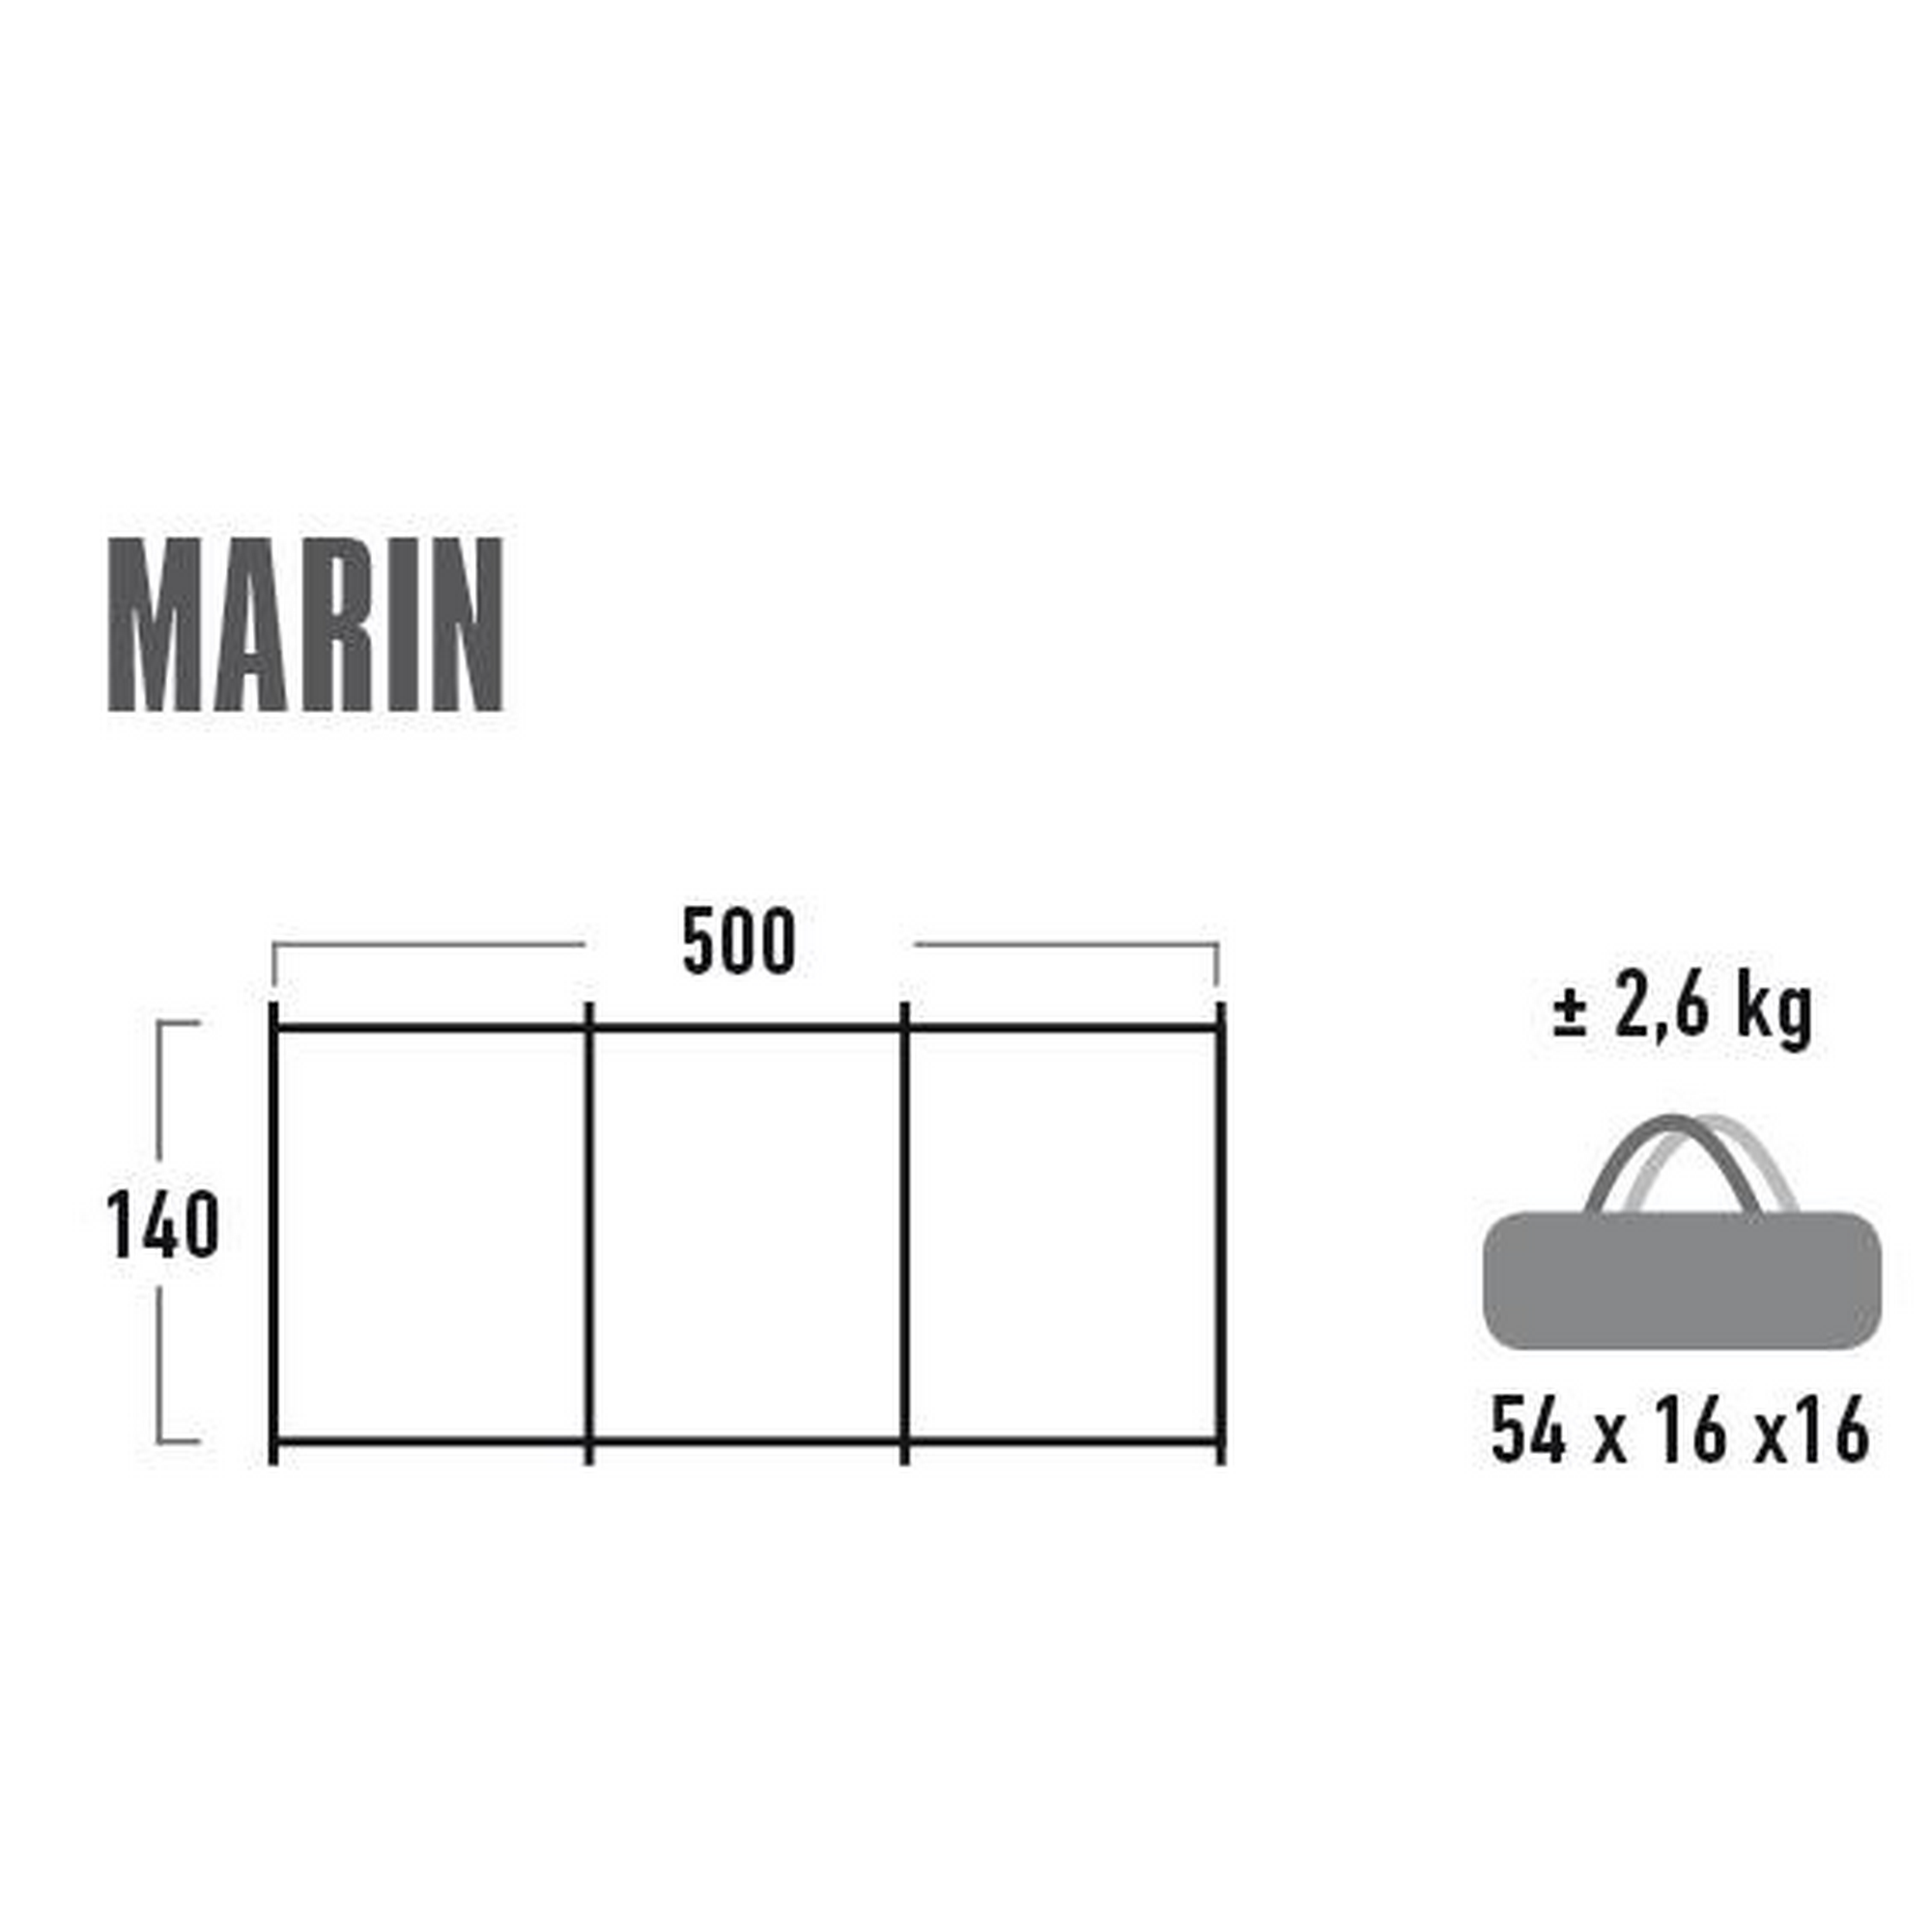 Wind- und Sichtschutz 'Marin' 500 x 140 cm grau/camouflage + product picture